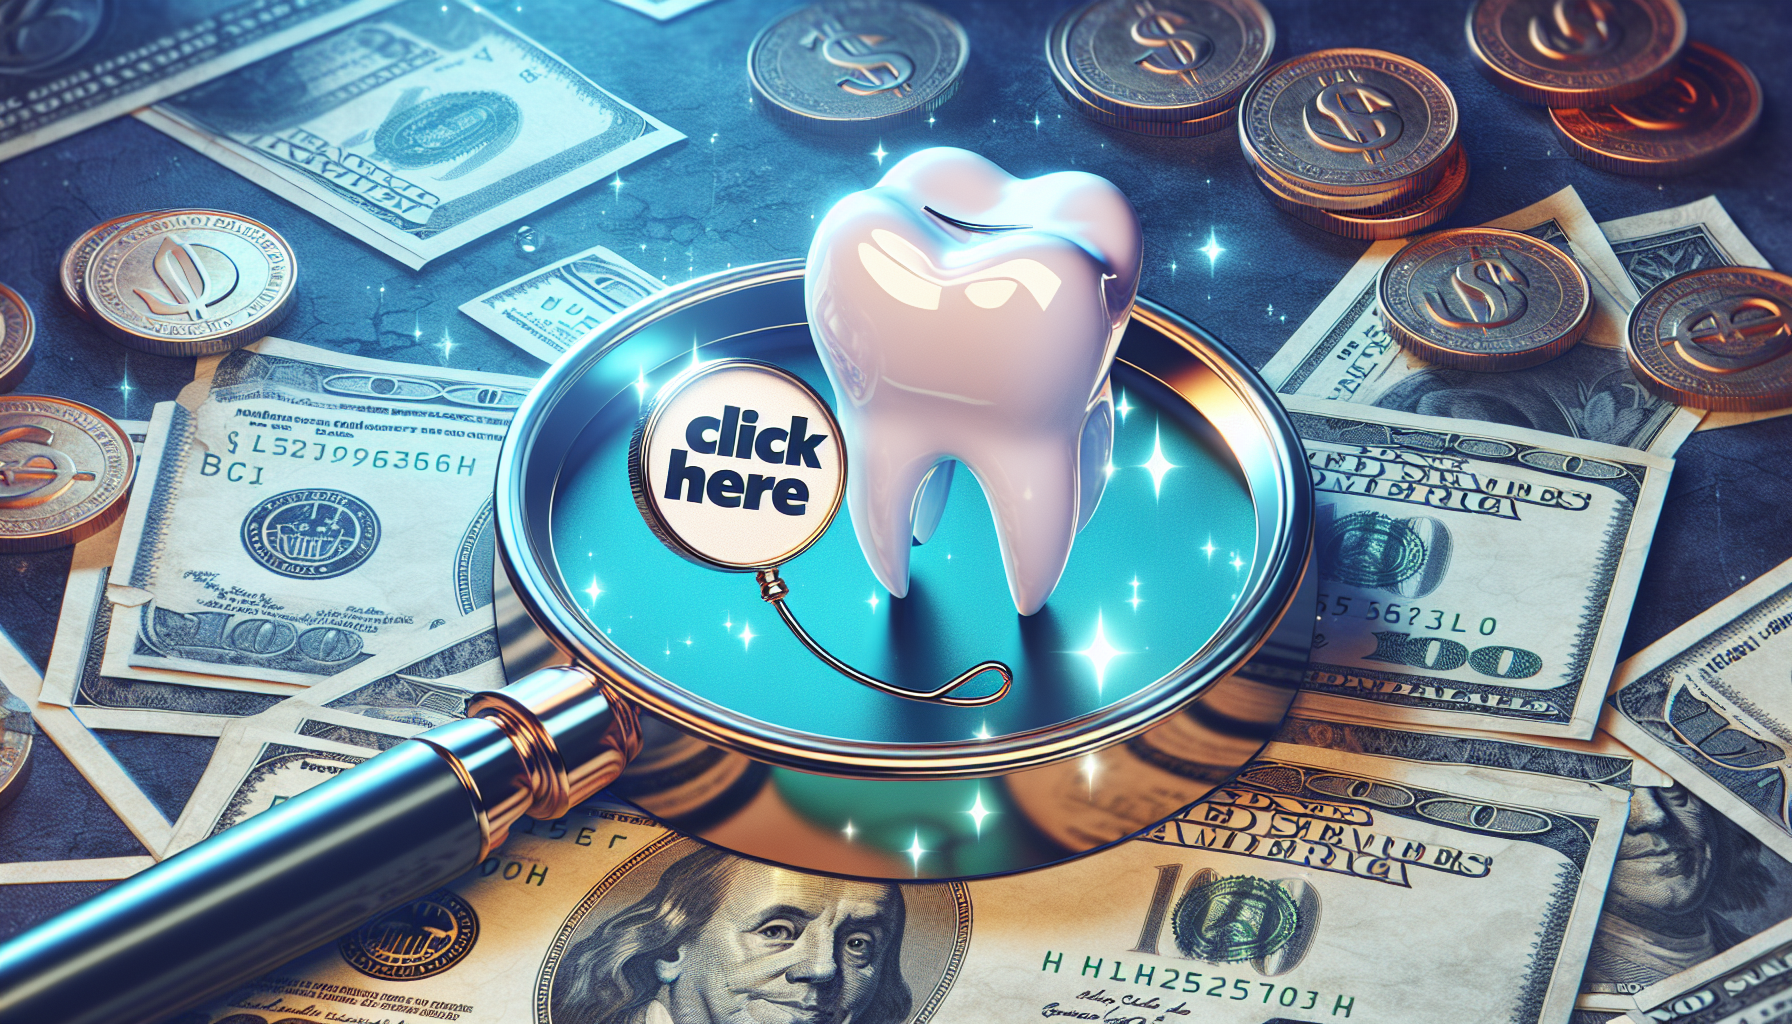 découvrez comment maximiser le remboursement de vos soins dentaires et optimiser vos remboursements pour les soins médicaux grâce à nos conseils pratiques.